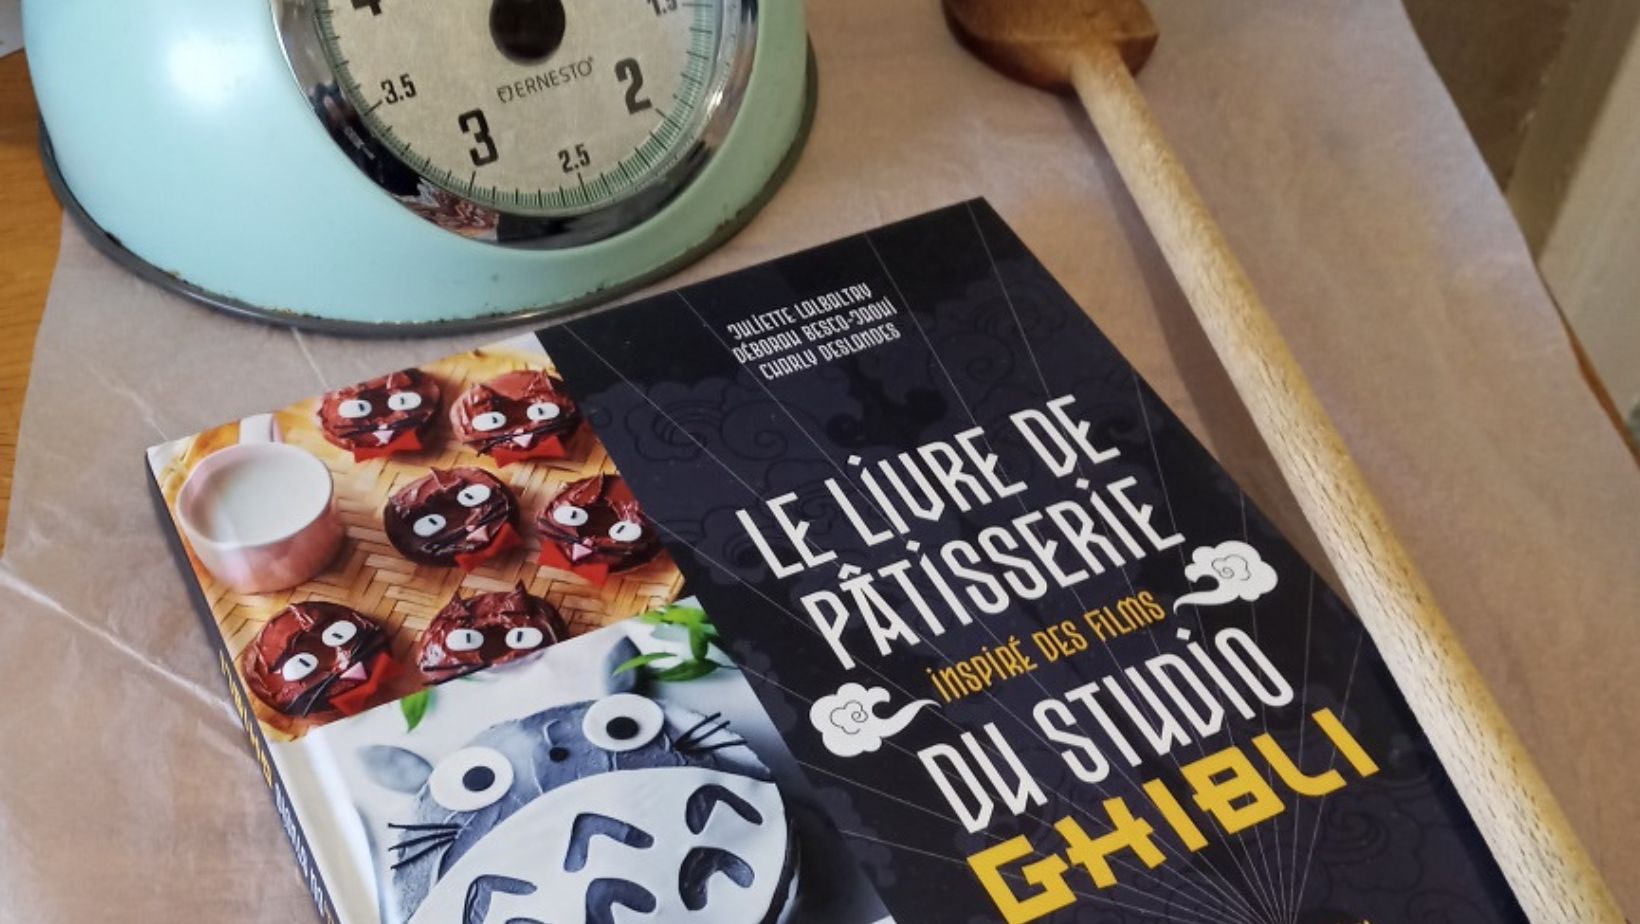 Le Livre de Pâtisserie inspiré des Films du Studio Ghibli - (Juliette  Lalbaltry) - Documentaire-Encyclopédie [HISLER BD, une librairie du réseau  Canal BD]